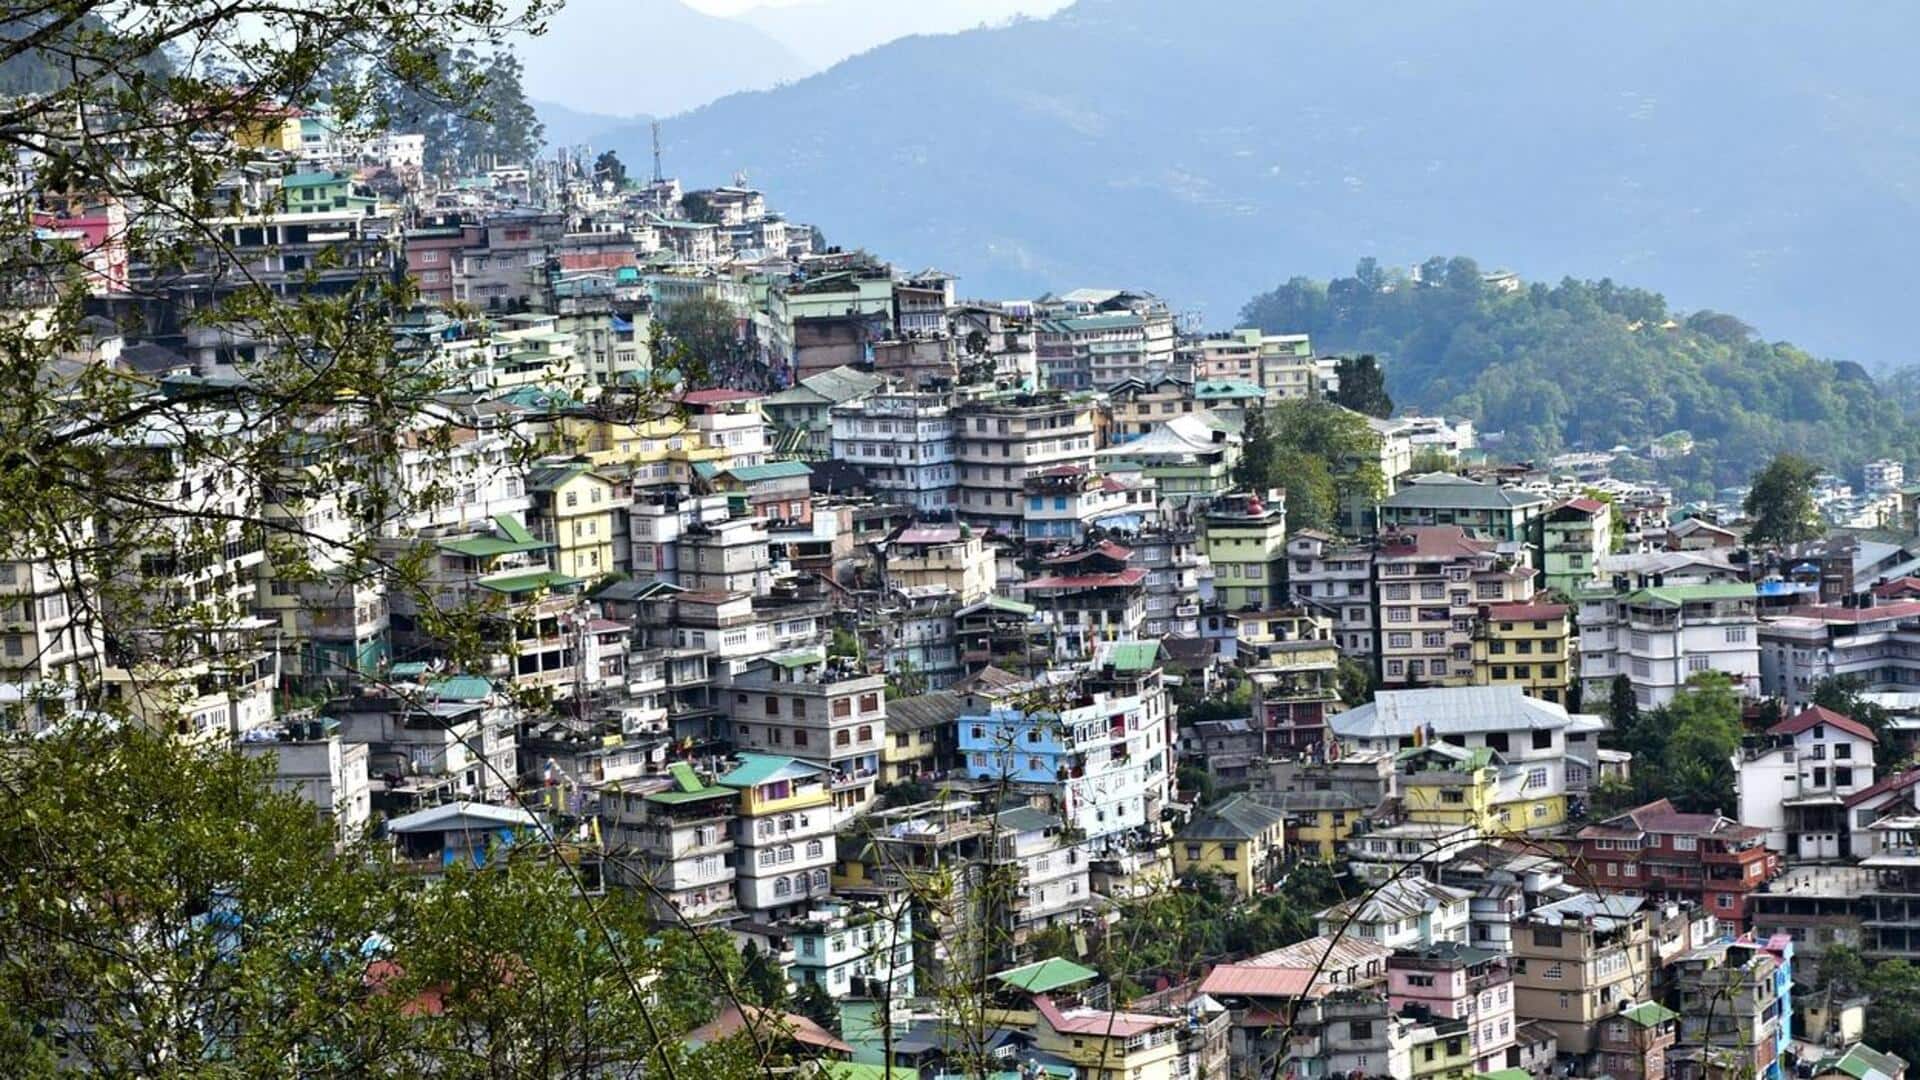 सिक्किम: अब तीसरी पार्टी को किराए पर नहीं दे सकेंगे होमस्टे, राज्य सरकार ने लगाई रोक